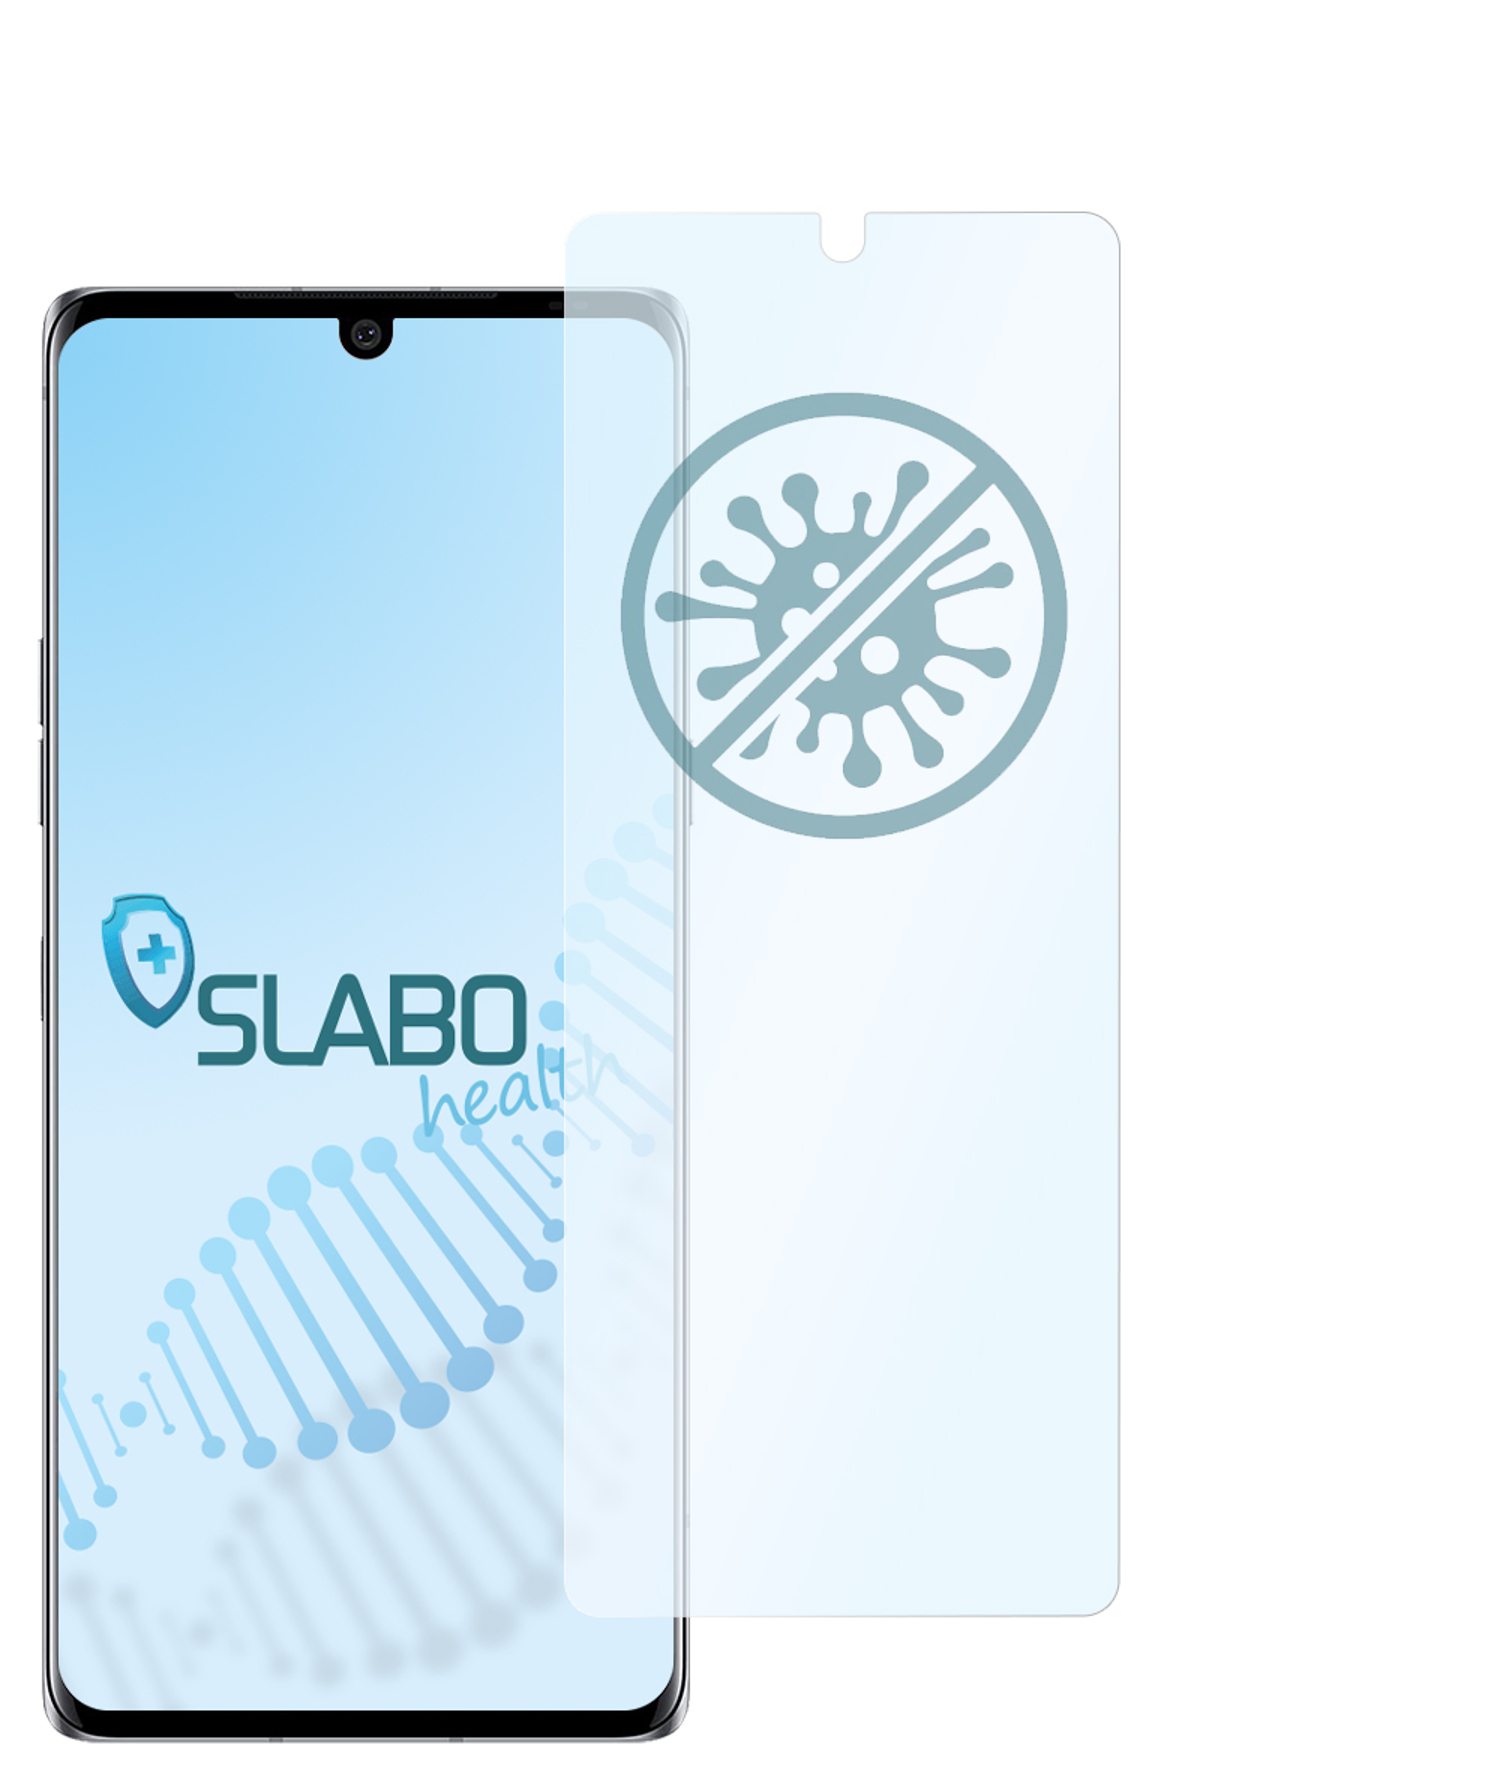 5G)) Displayschutz(für Hybridglasfolie Velvet SLABO antibakterielle LG | (4G flexible